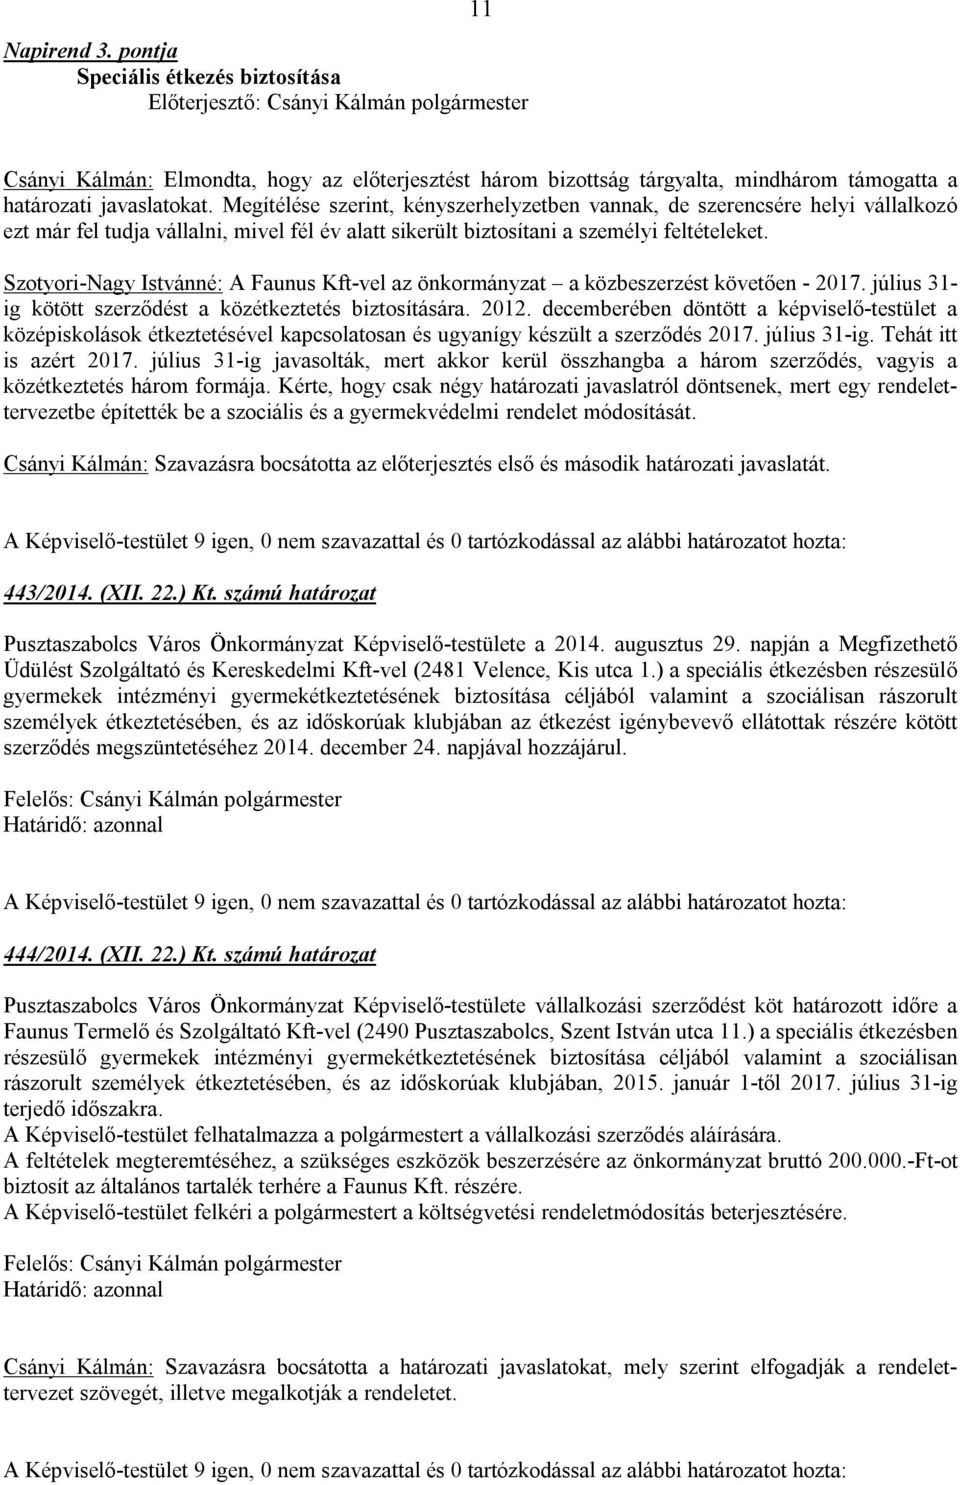 Szotyori-Nagy Istvánné: A Faunus Kft-vel az önkormányzat a közbeszerzést követően - 2017. július 31- ig kötött szerződést a közétkeztetés biztosítására. 2012.